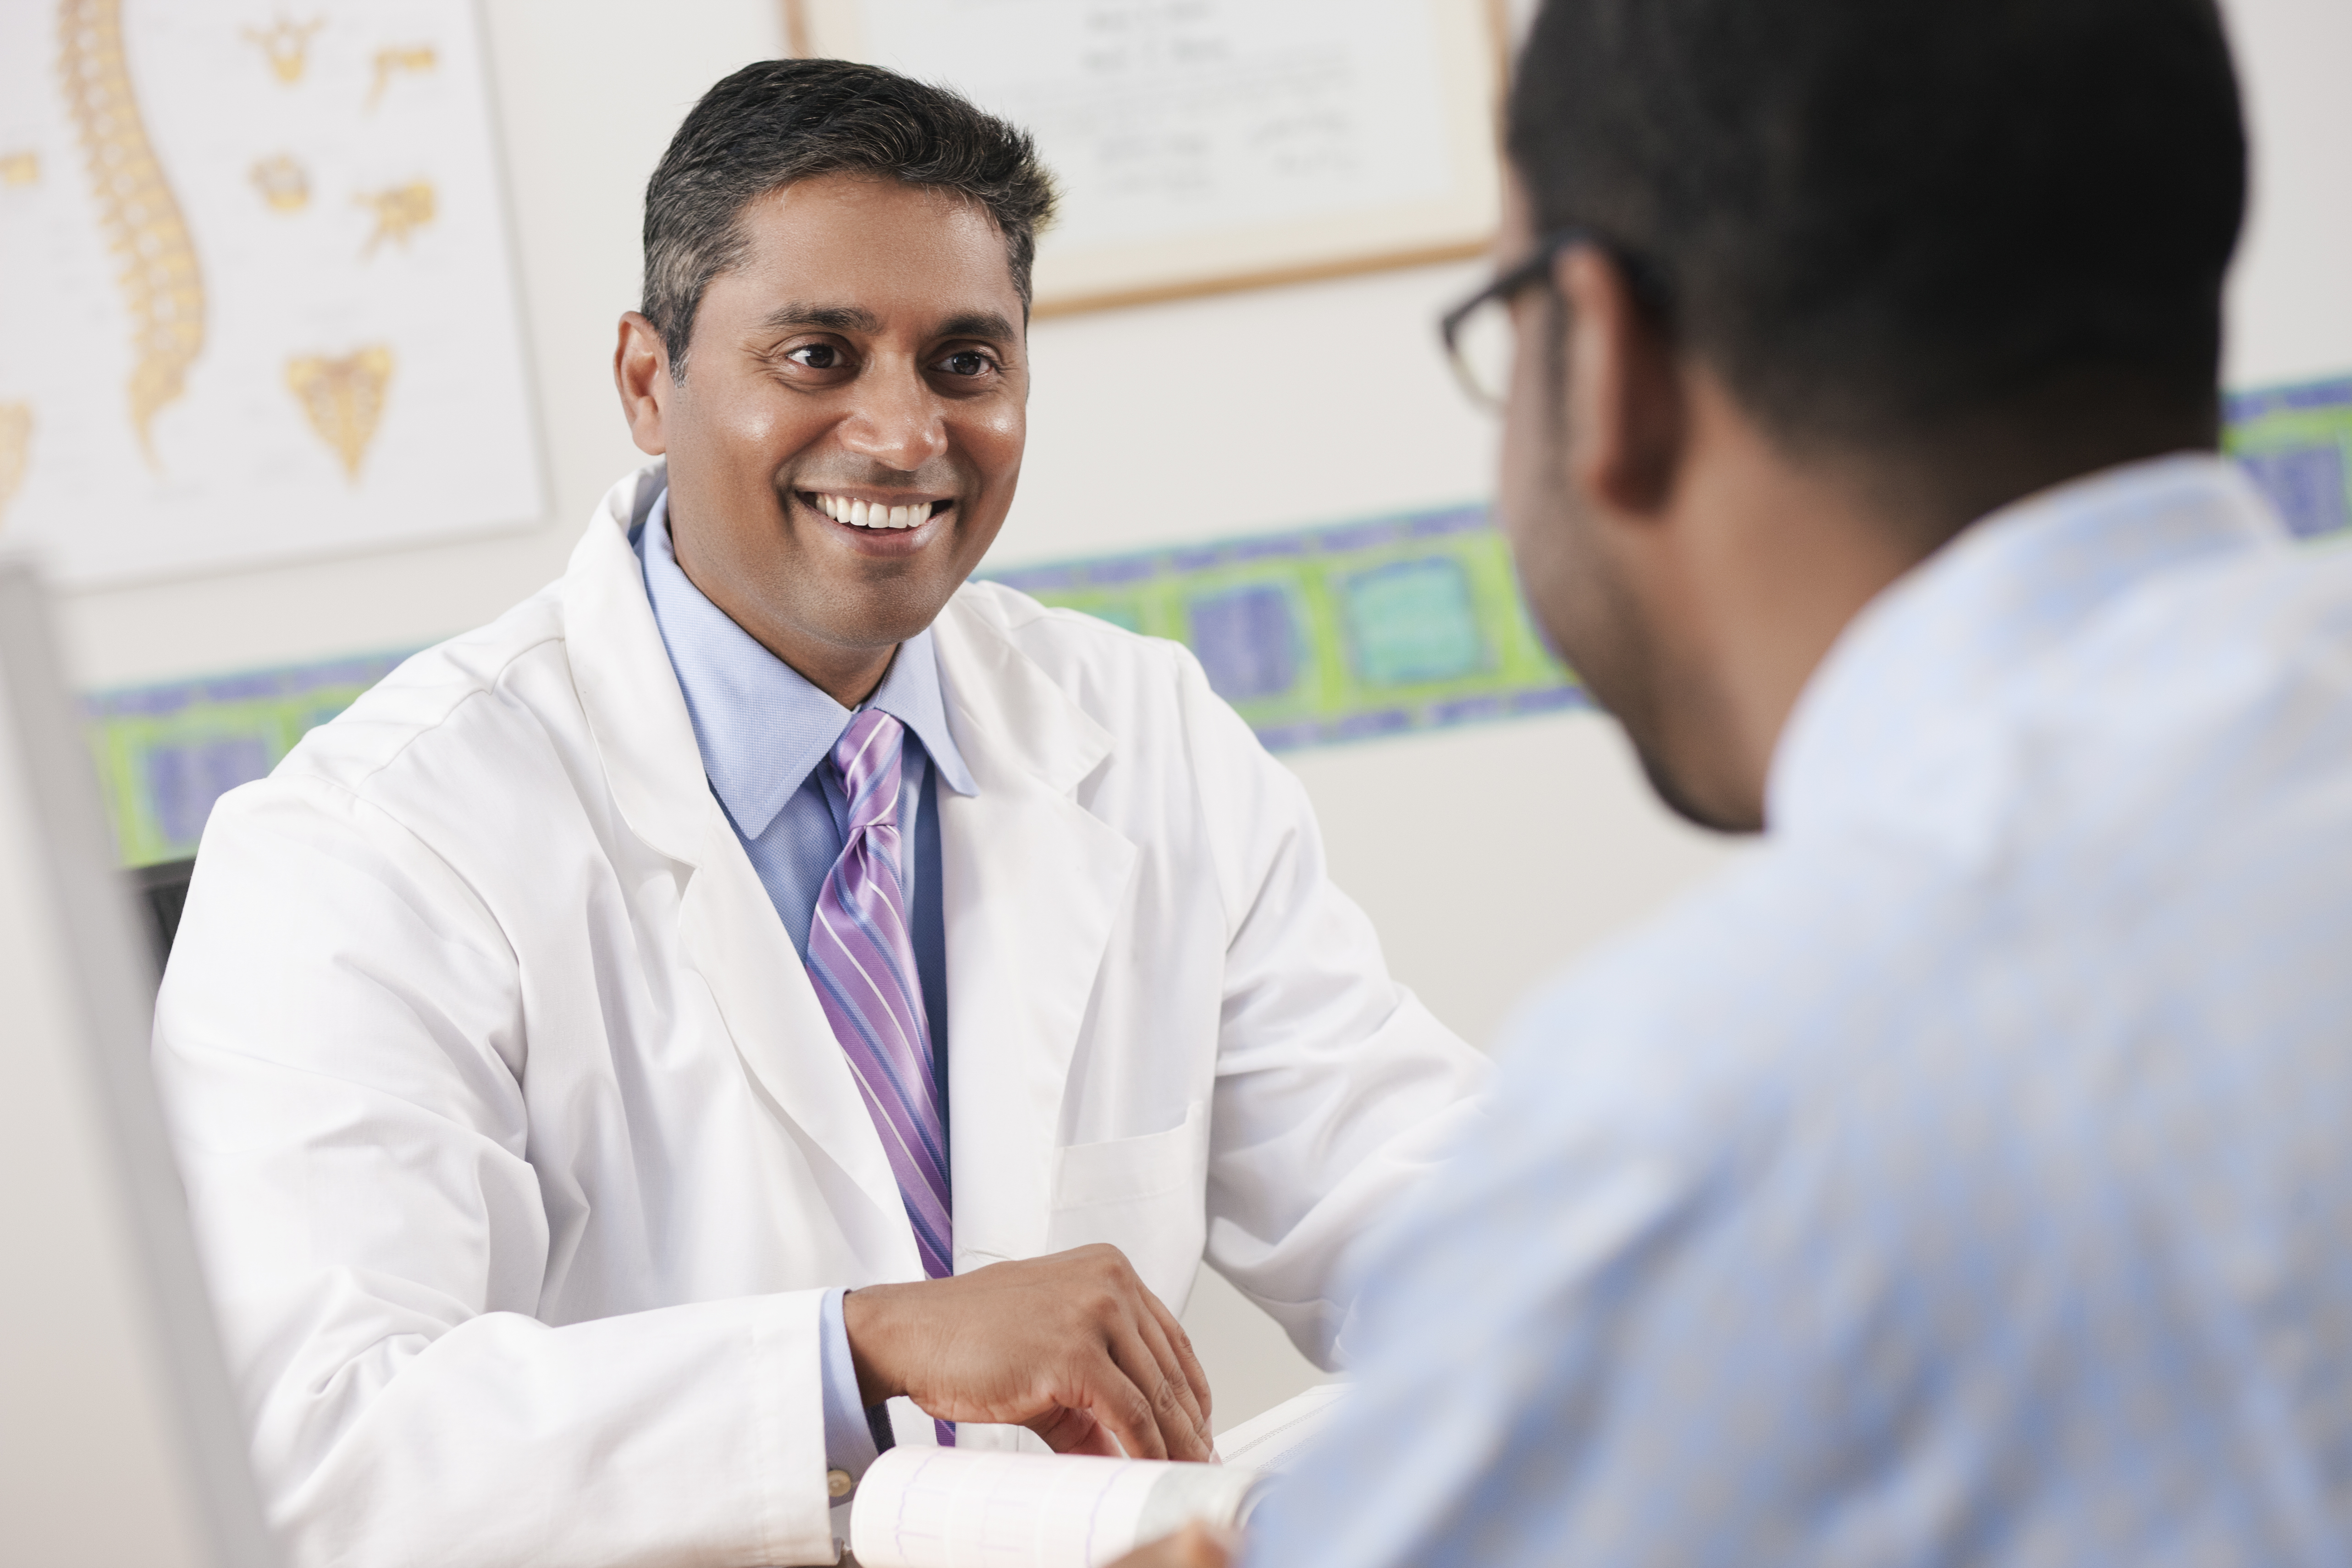 Médico sonriente sentado frente a un paciente